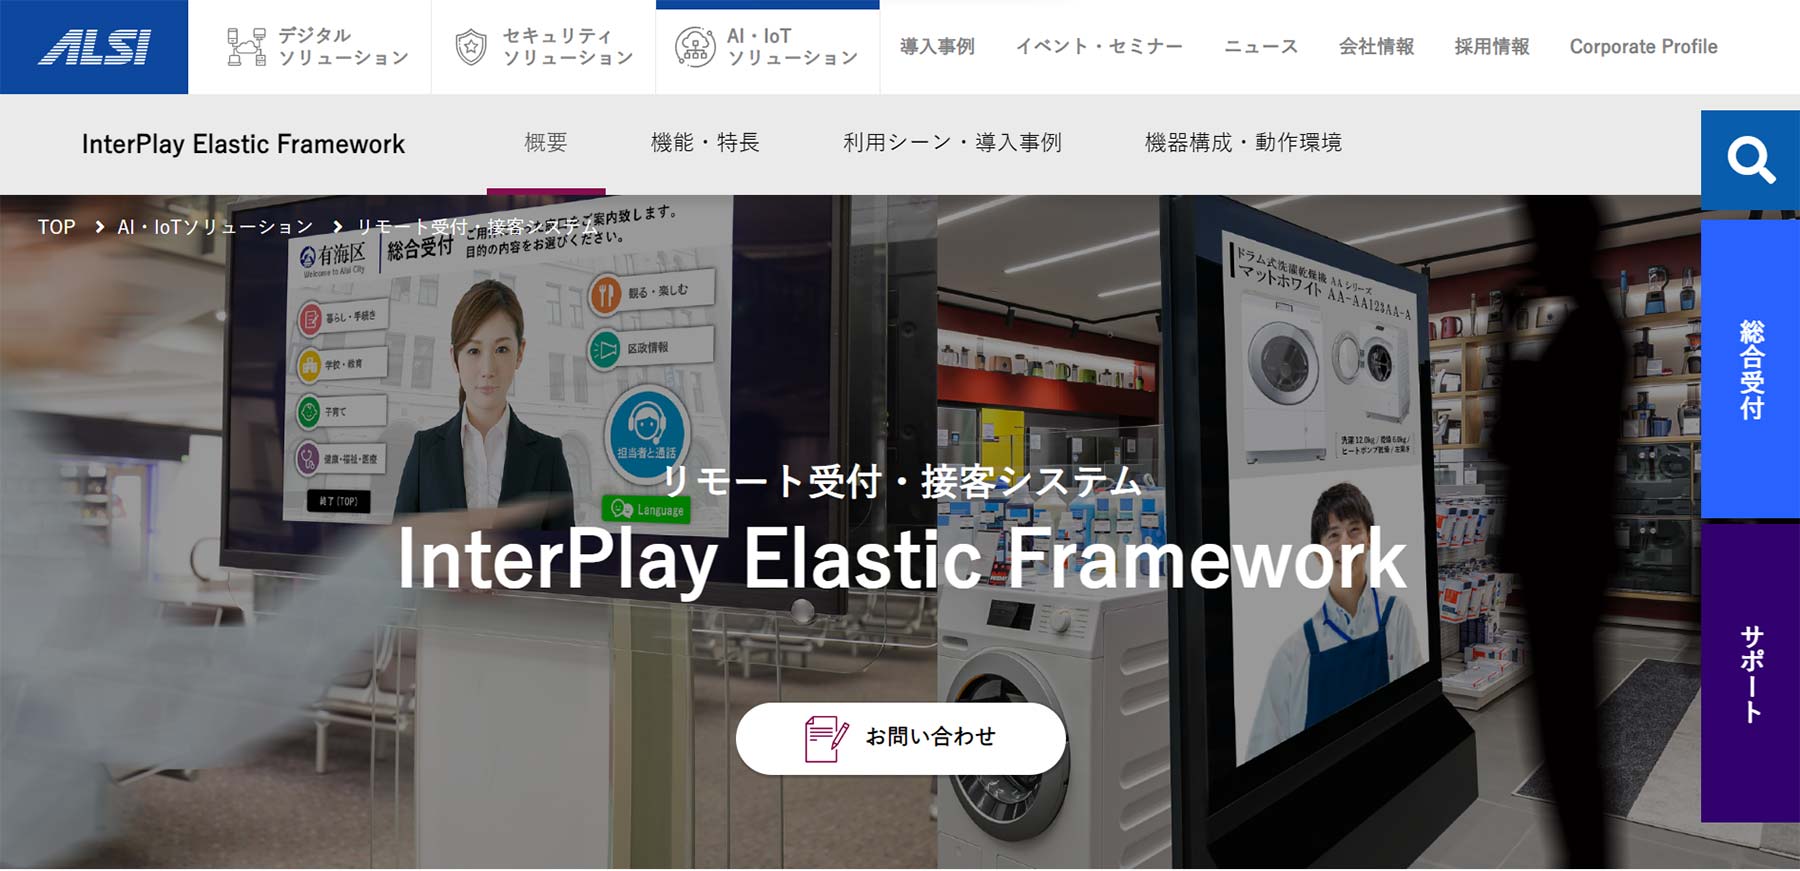 InterPlay Elastic Framework公式Webサイト